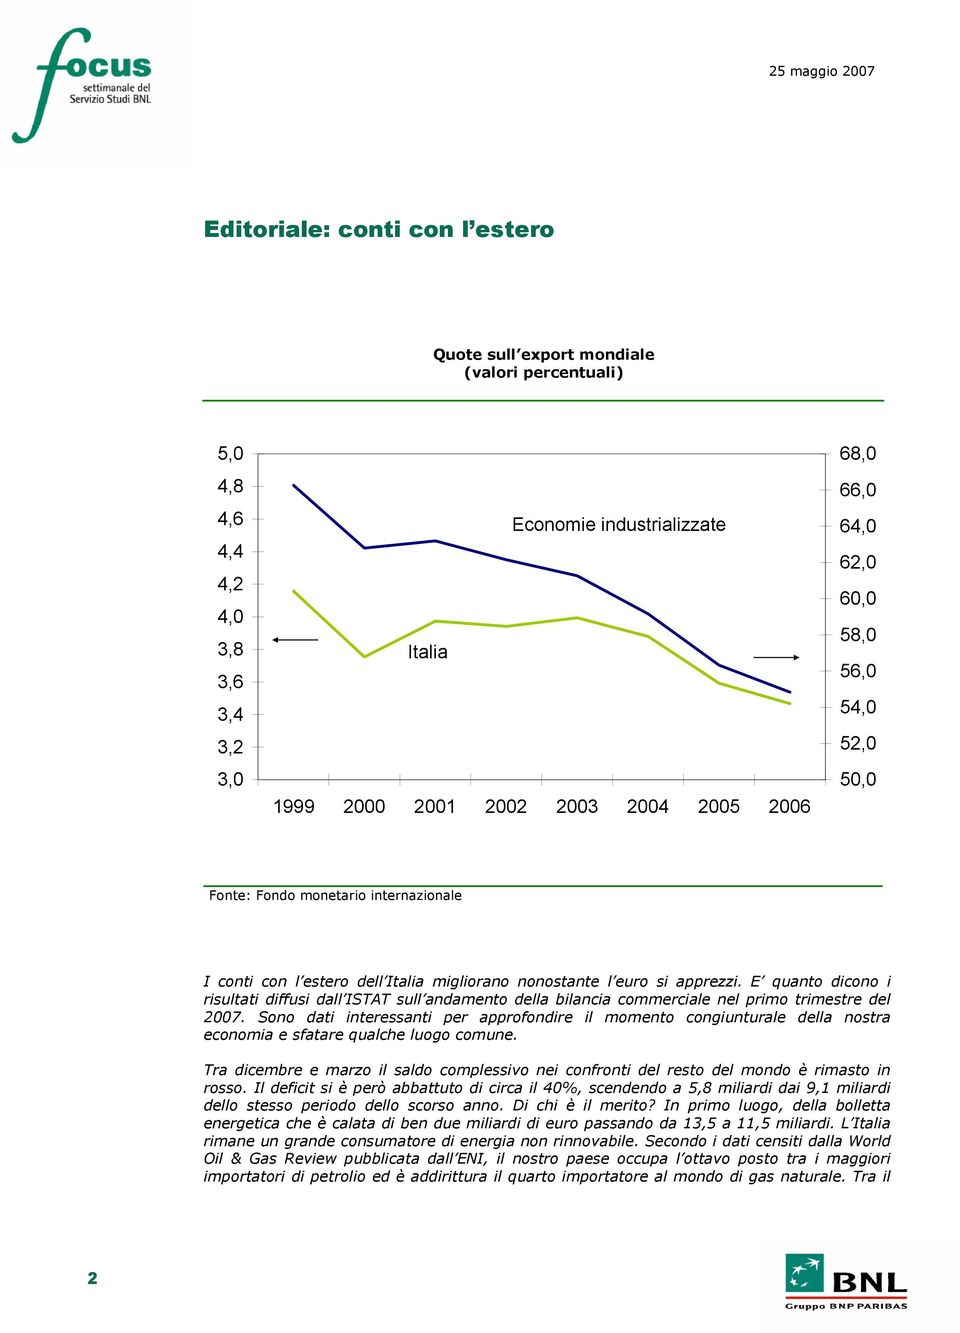 E quanto dicono i risultati diffusi dall ISTAT sull andamento della bilancia commerciale nel primo trimestre del 2007.